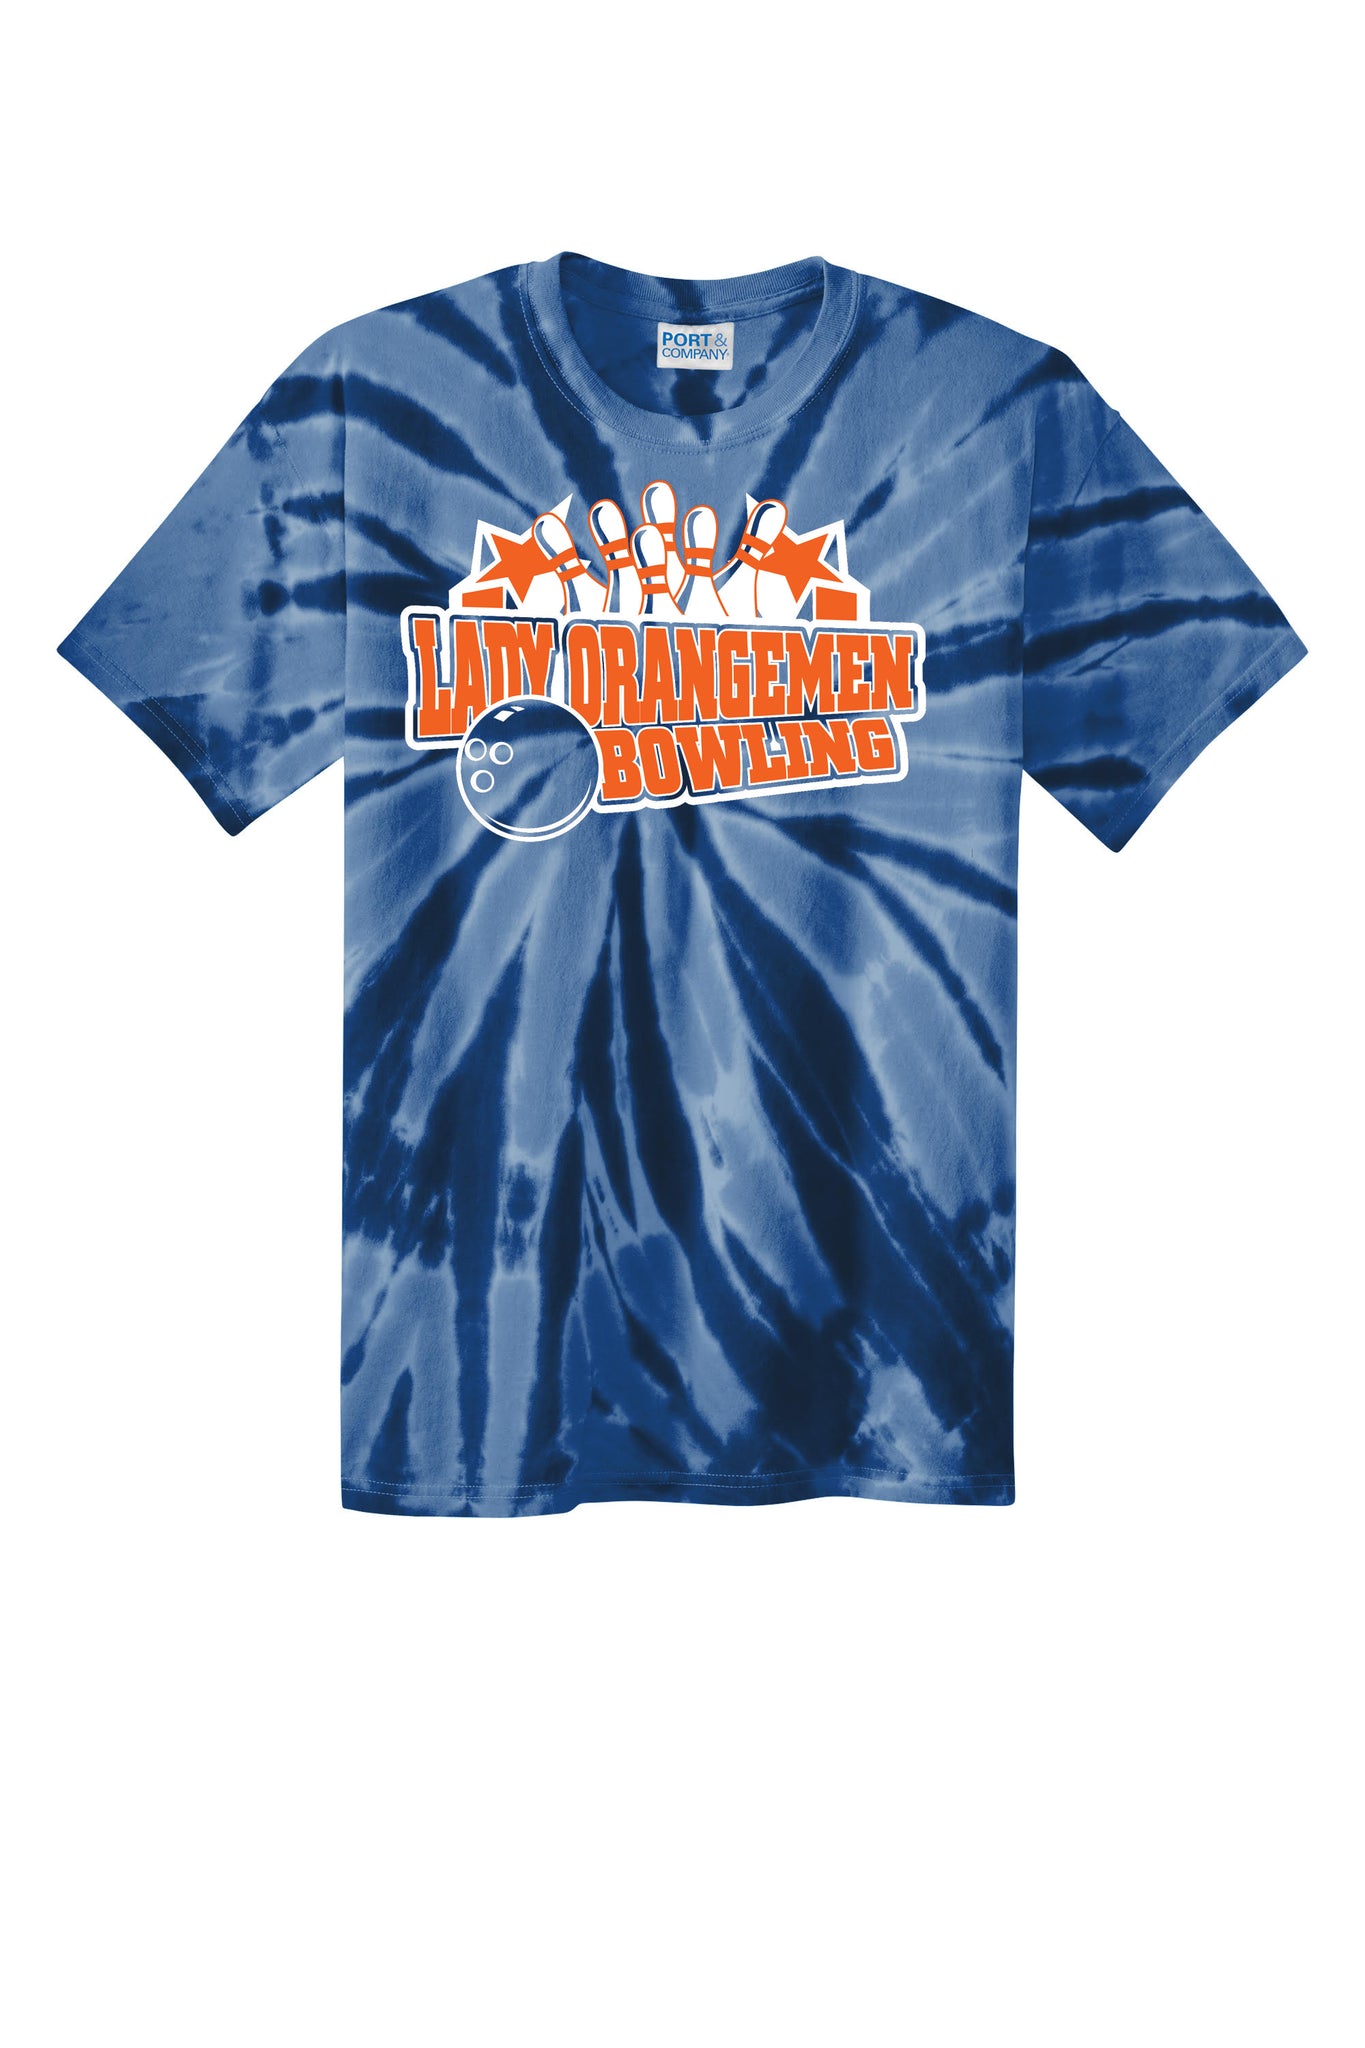 Lady Orangemen Bowling Tie-Dye T-Shirts